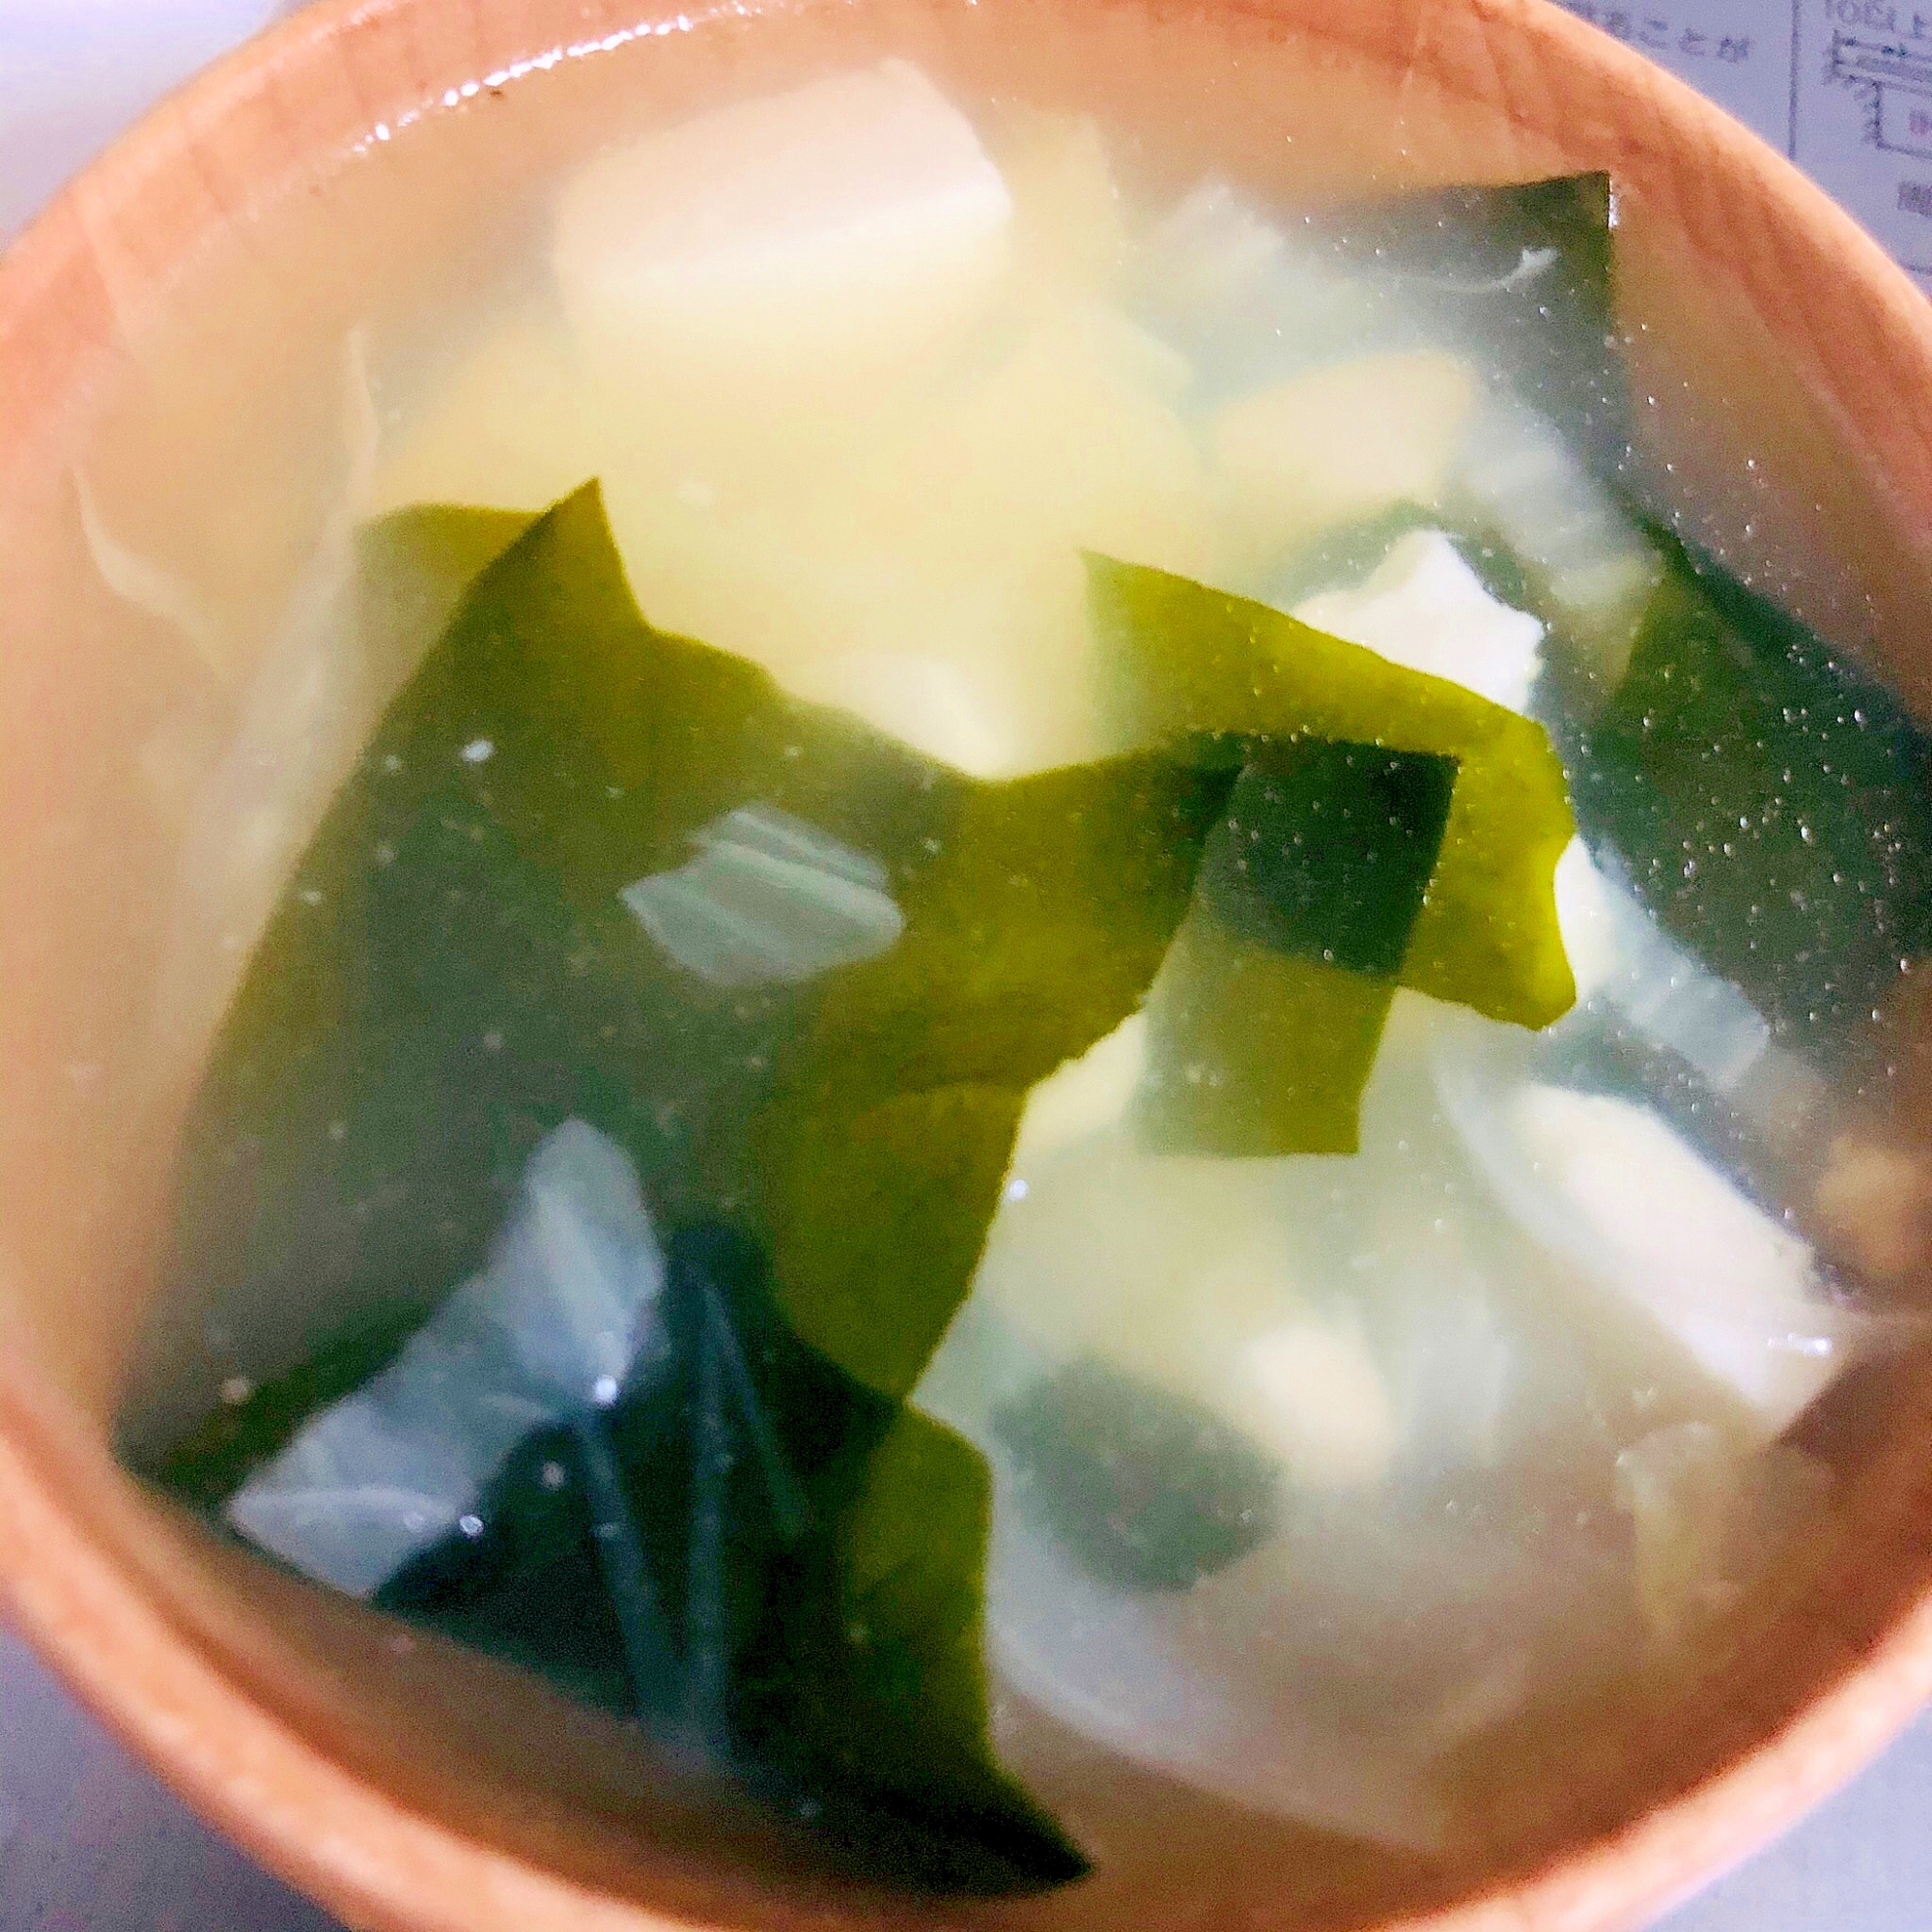 白菜と豆腐とわかめの味噌汁